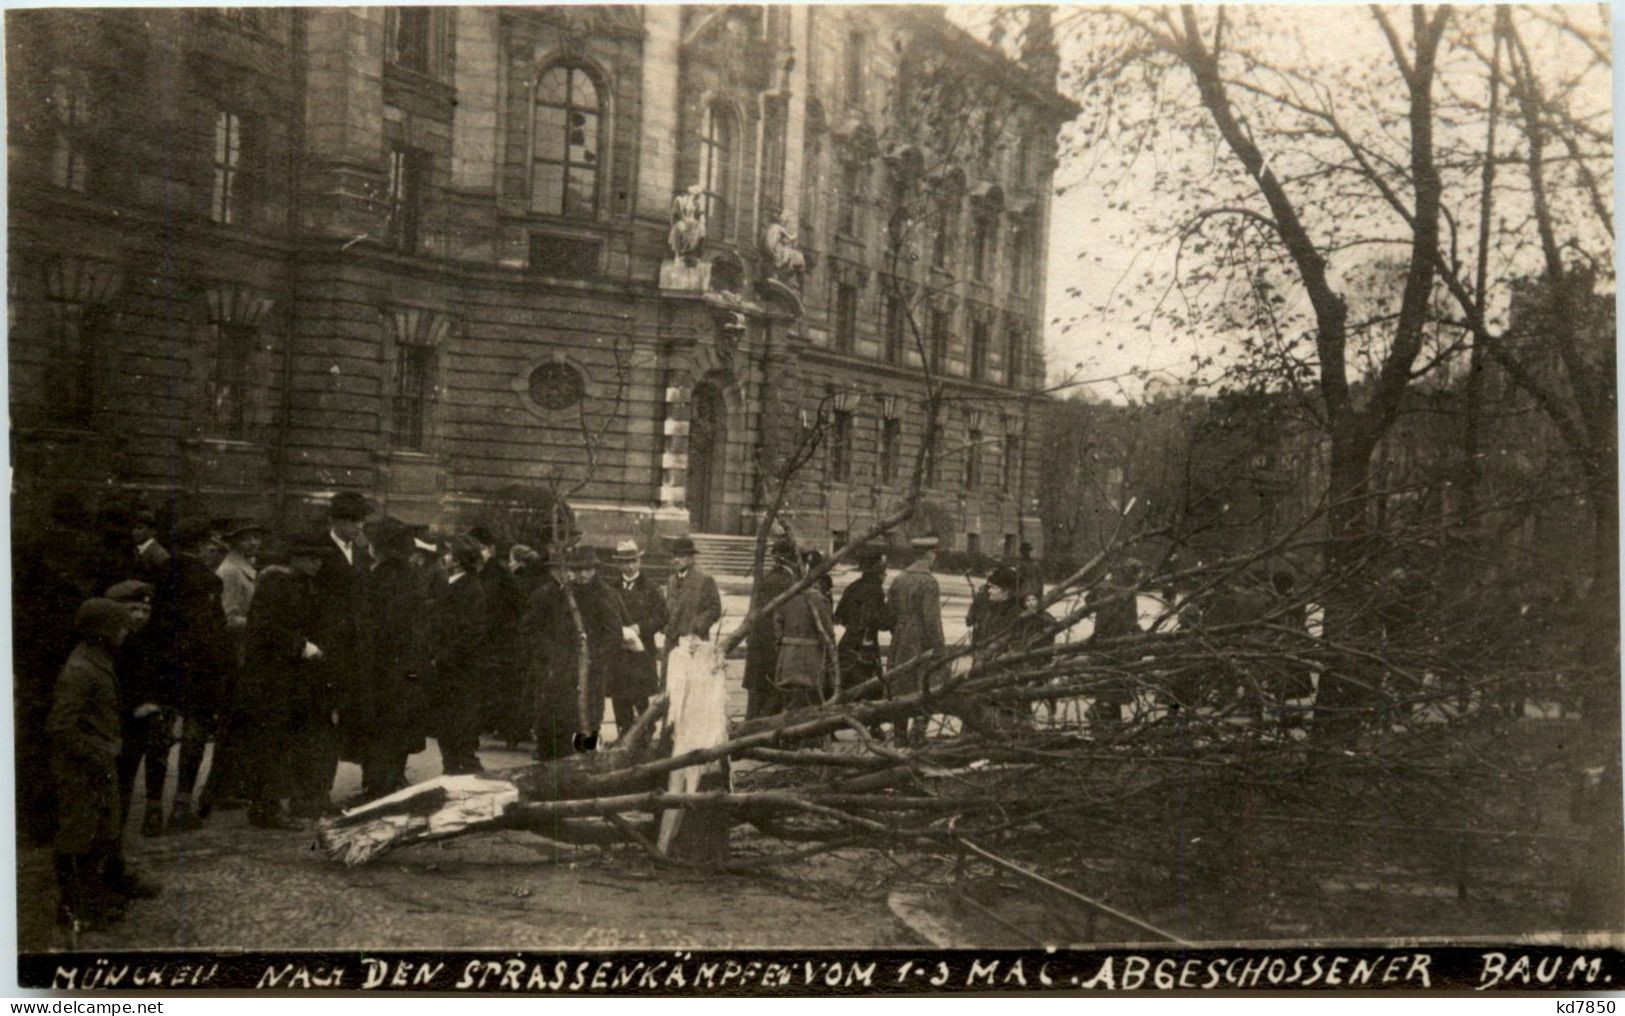 München - Strassenkämpfe 1-3 Mai 1919 - Abgeschossener Baum - Muenchen